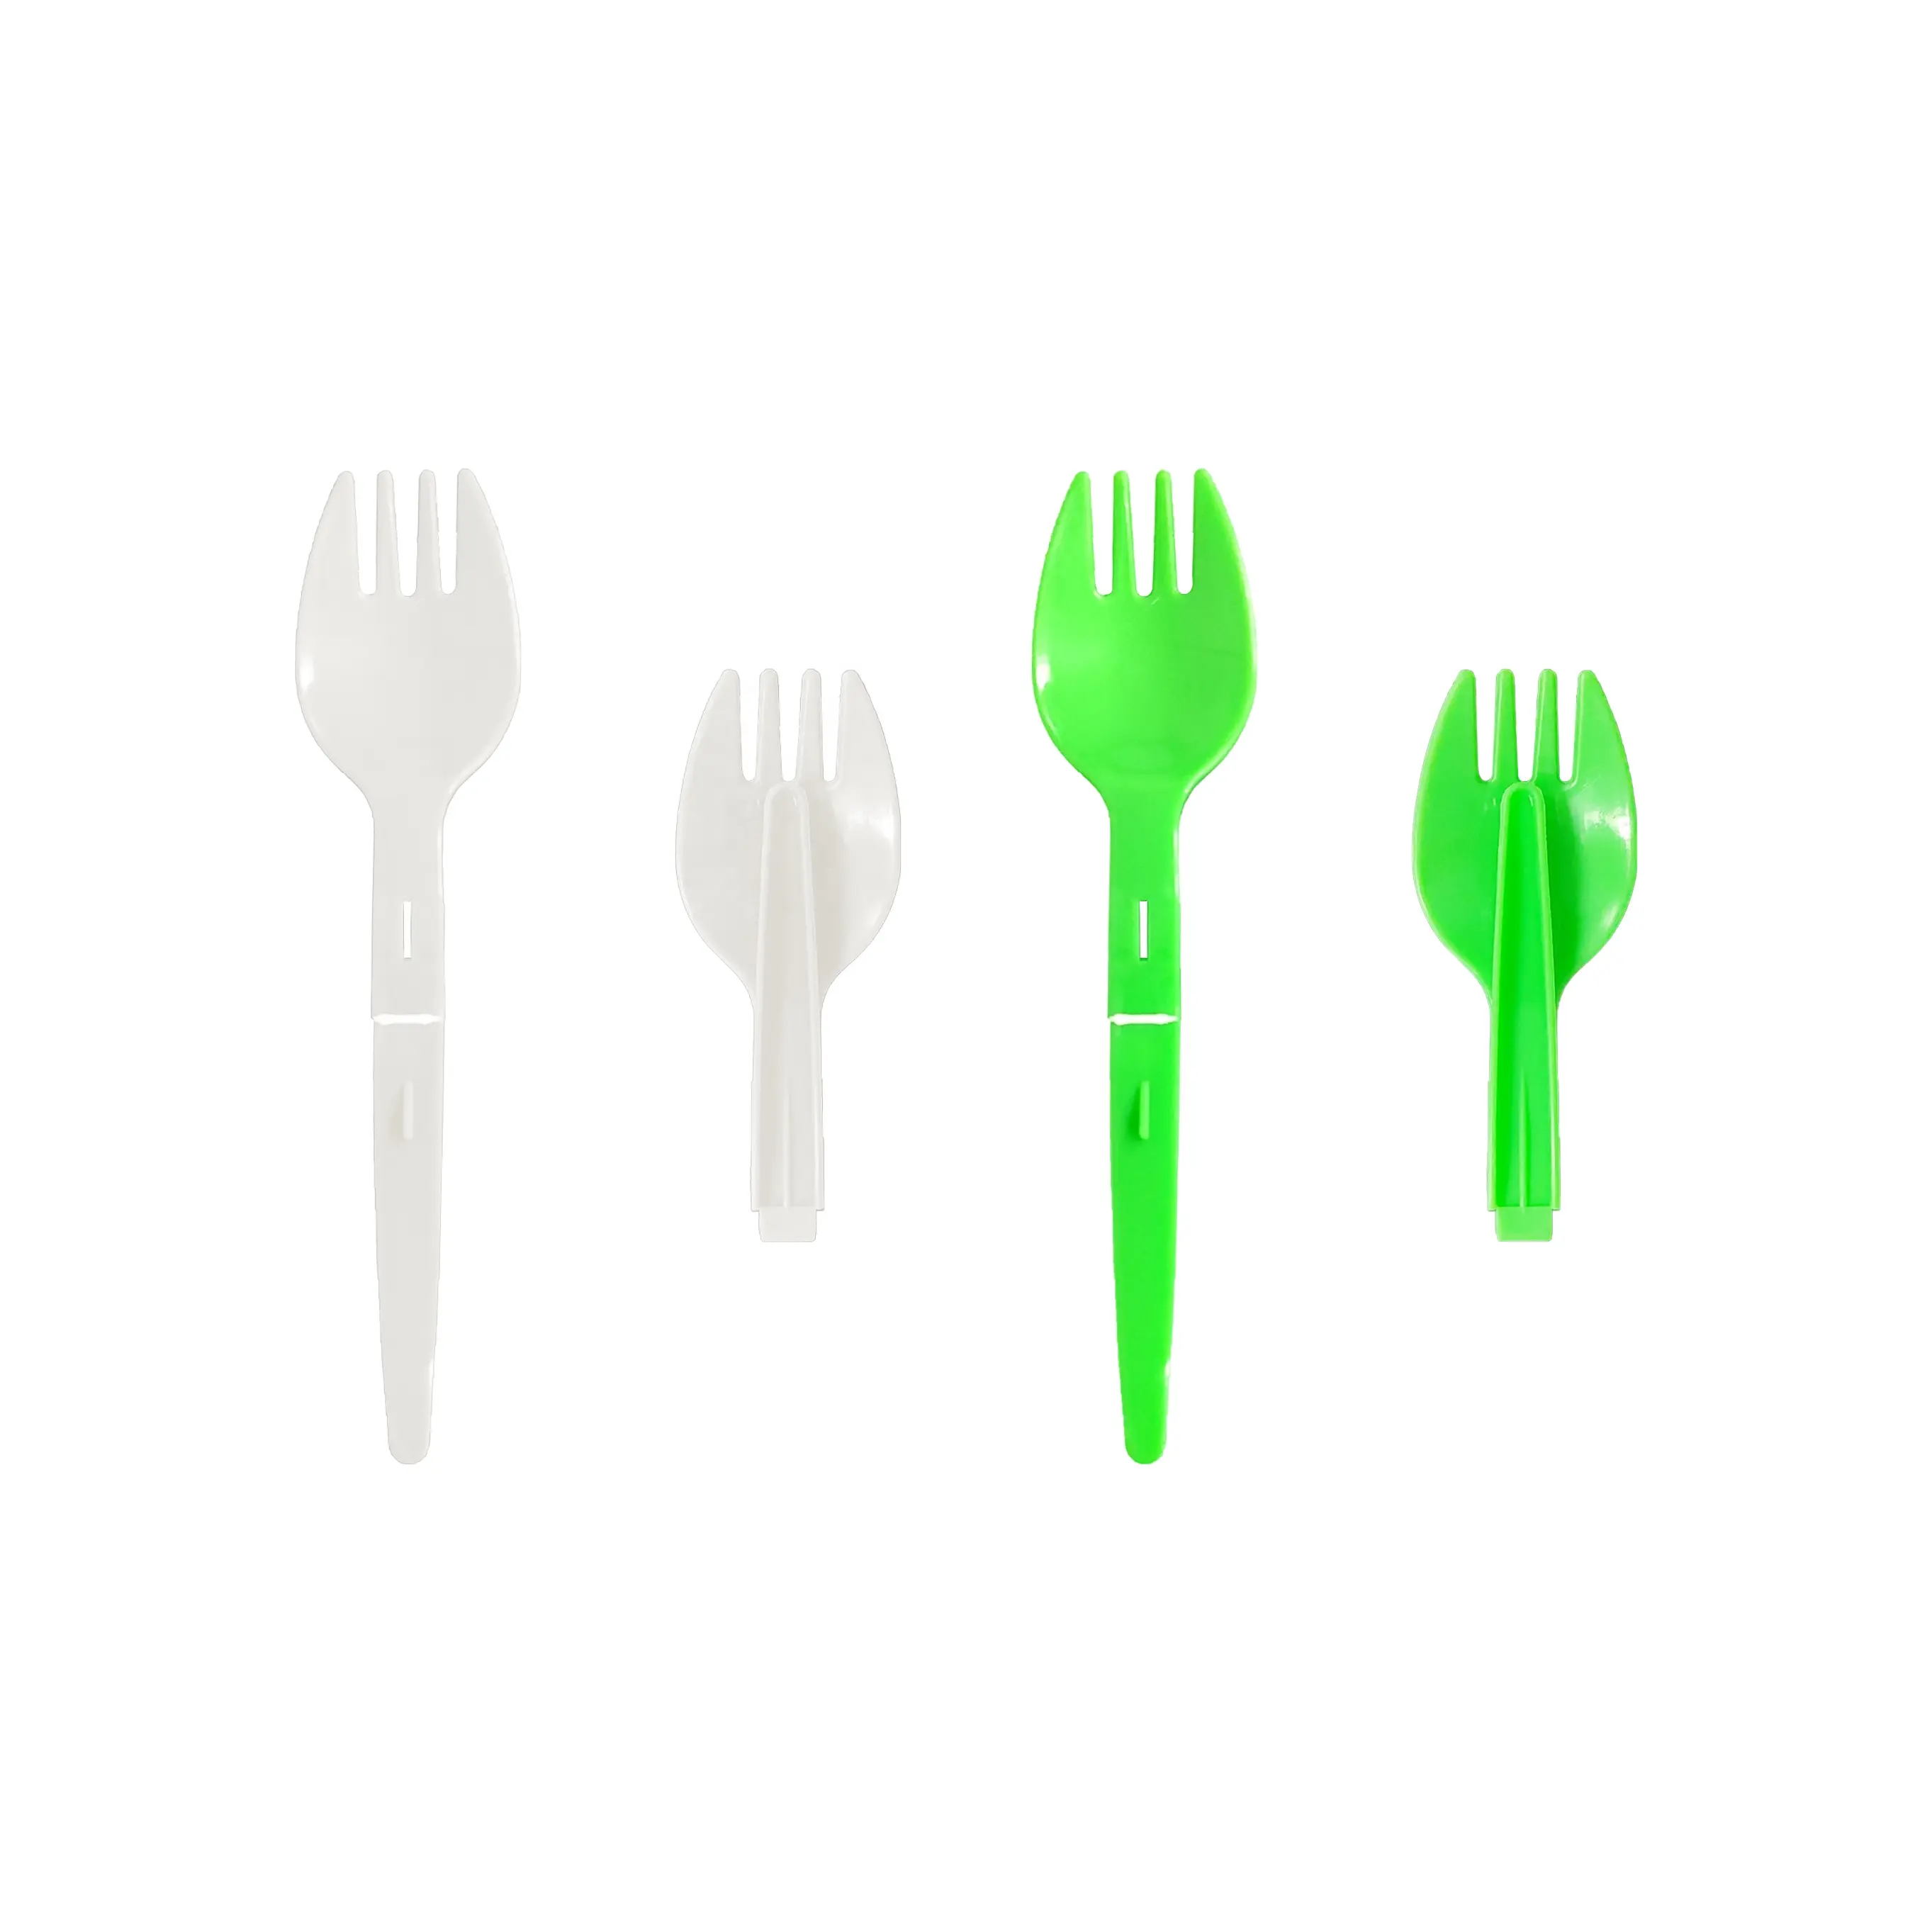 Cucchiaio e forchetta in plastica usa e getta personalizzati di nuovo stile per viaggi o feste